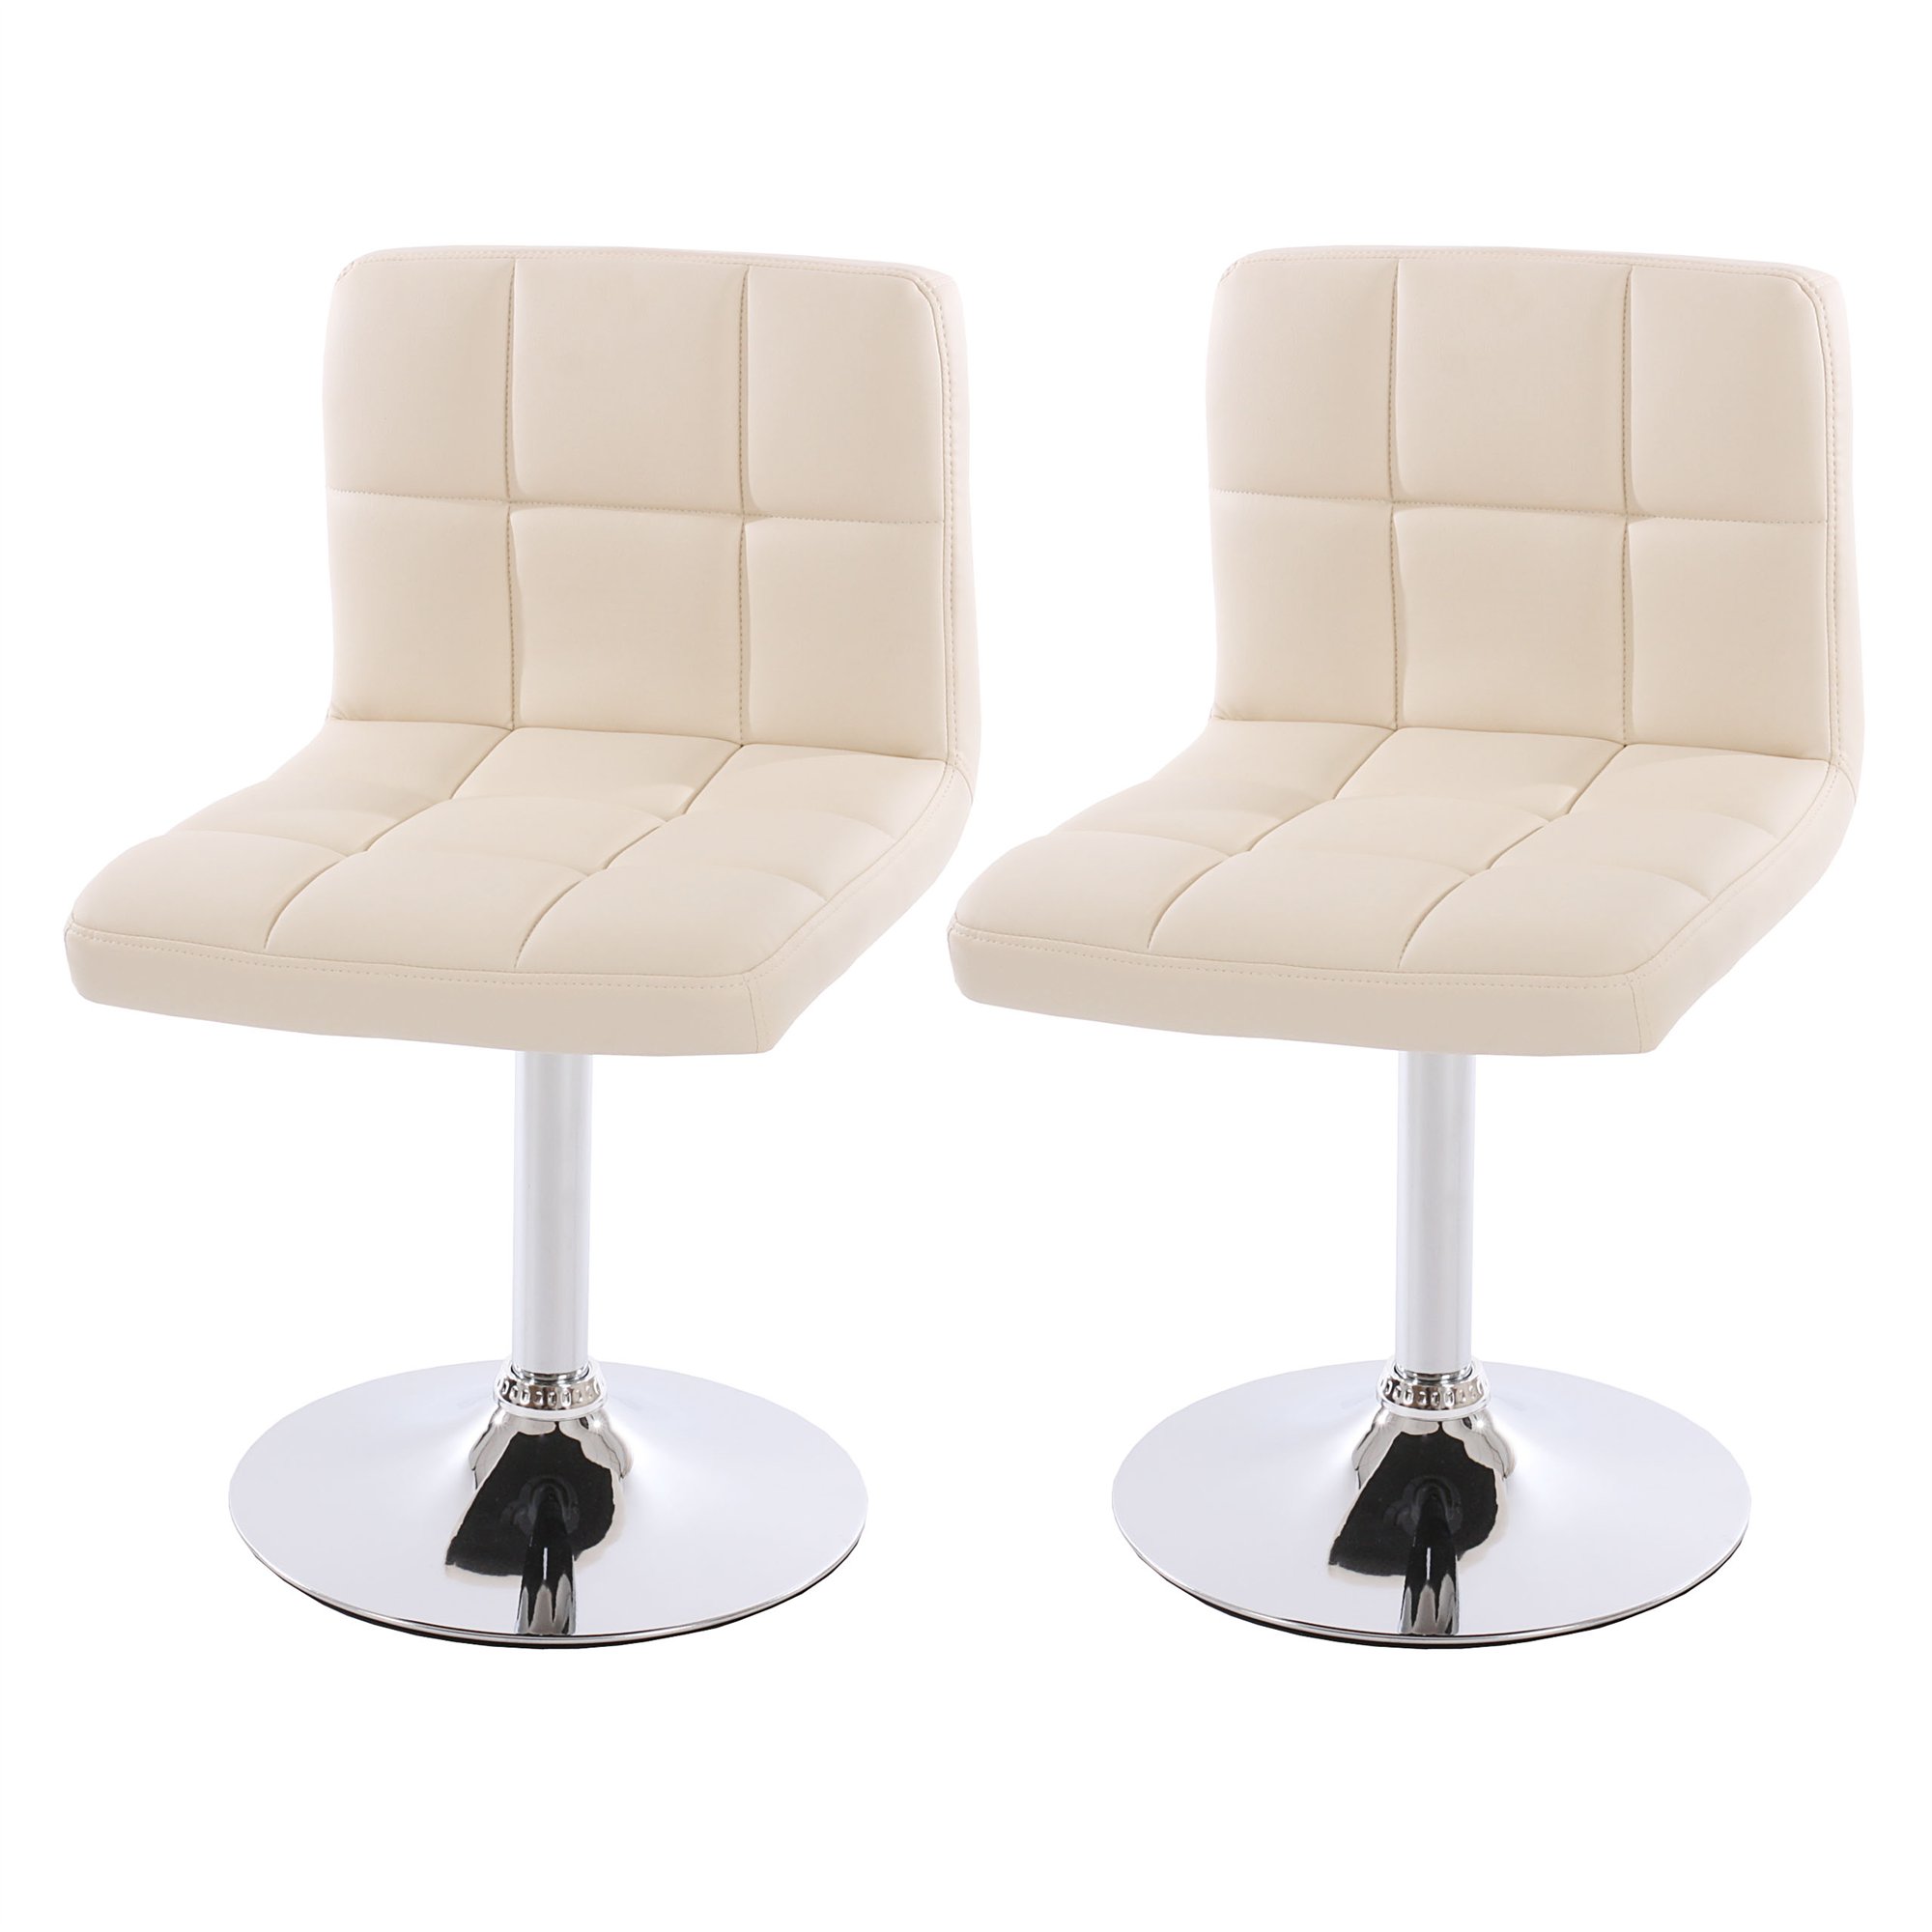 Conjunto de 2 sillas de Comedor GENOVA, Giratorias, Muy cómodas, Color Crema